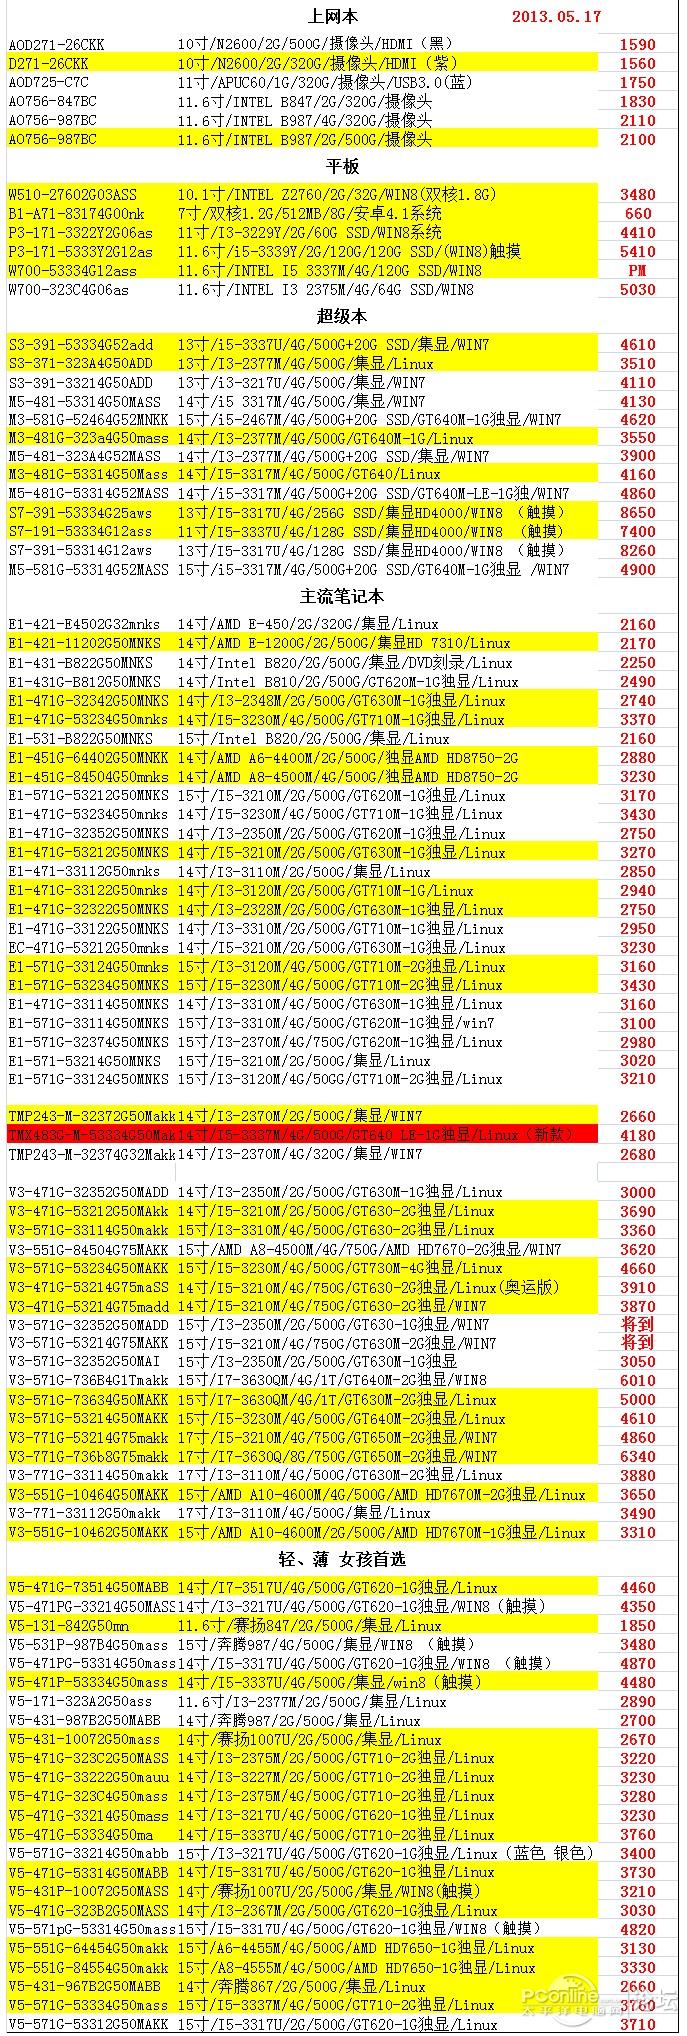 广州-宏碁笔记本参考报价表 2013.05.17更新